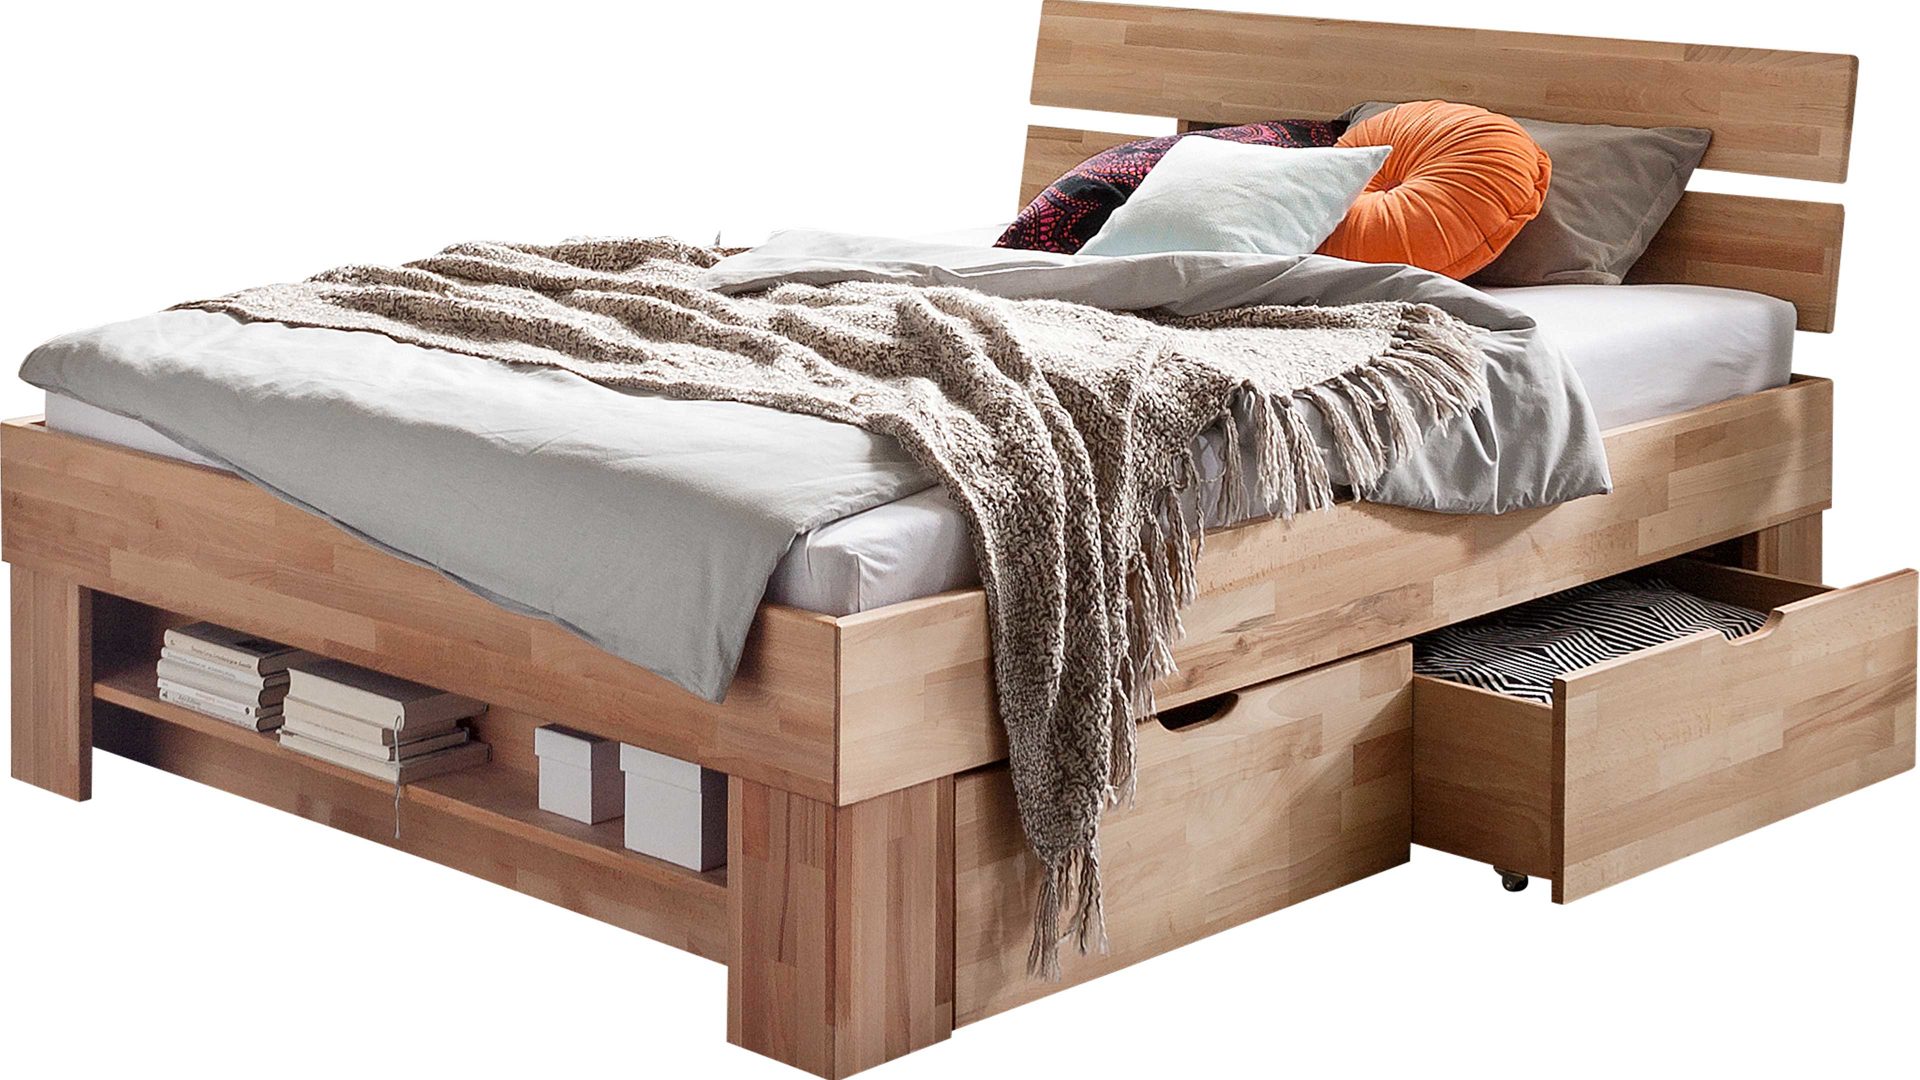 Doppelbett Elfo-möbel aus Holz in Holzfarben Bettgestell Sofie als Massivholzmöbel mit Wohlfühlkomfort natur geöltes Kernbuchenholz - Liegefläche ca. 180 x 200 cm